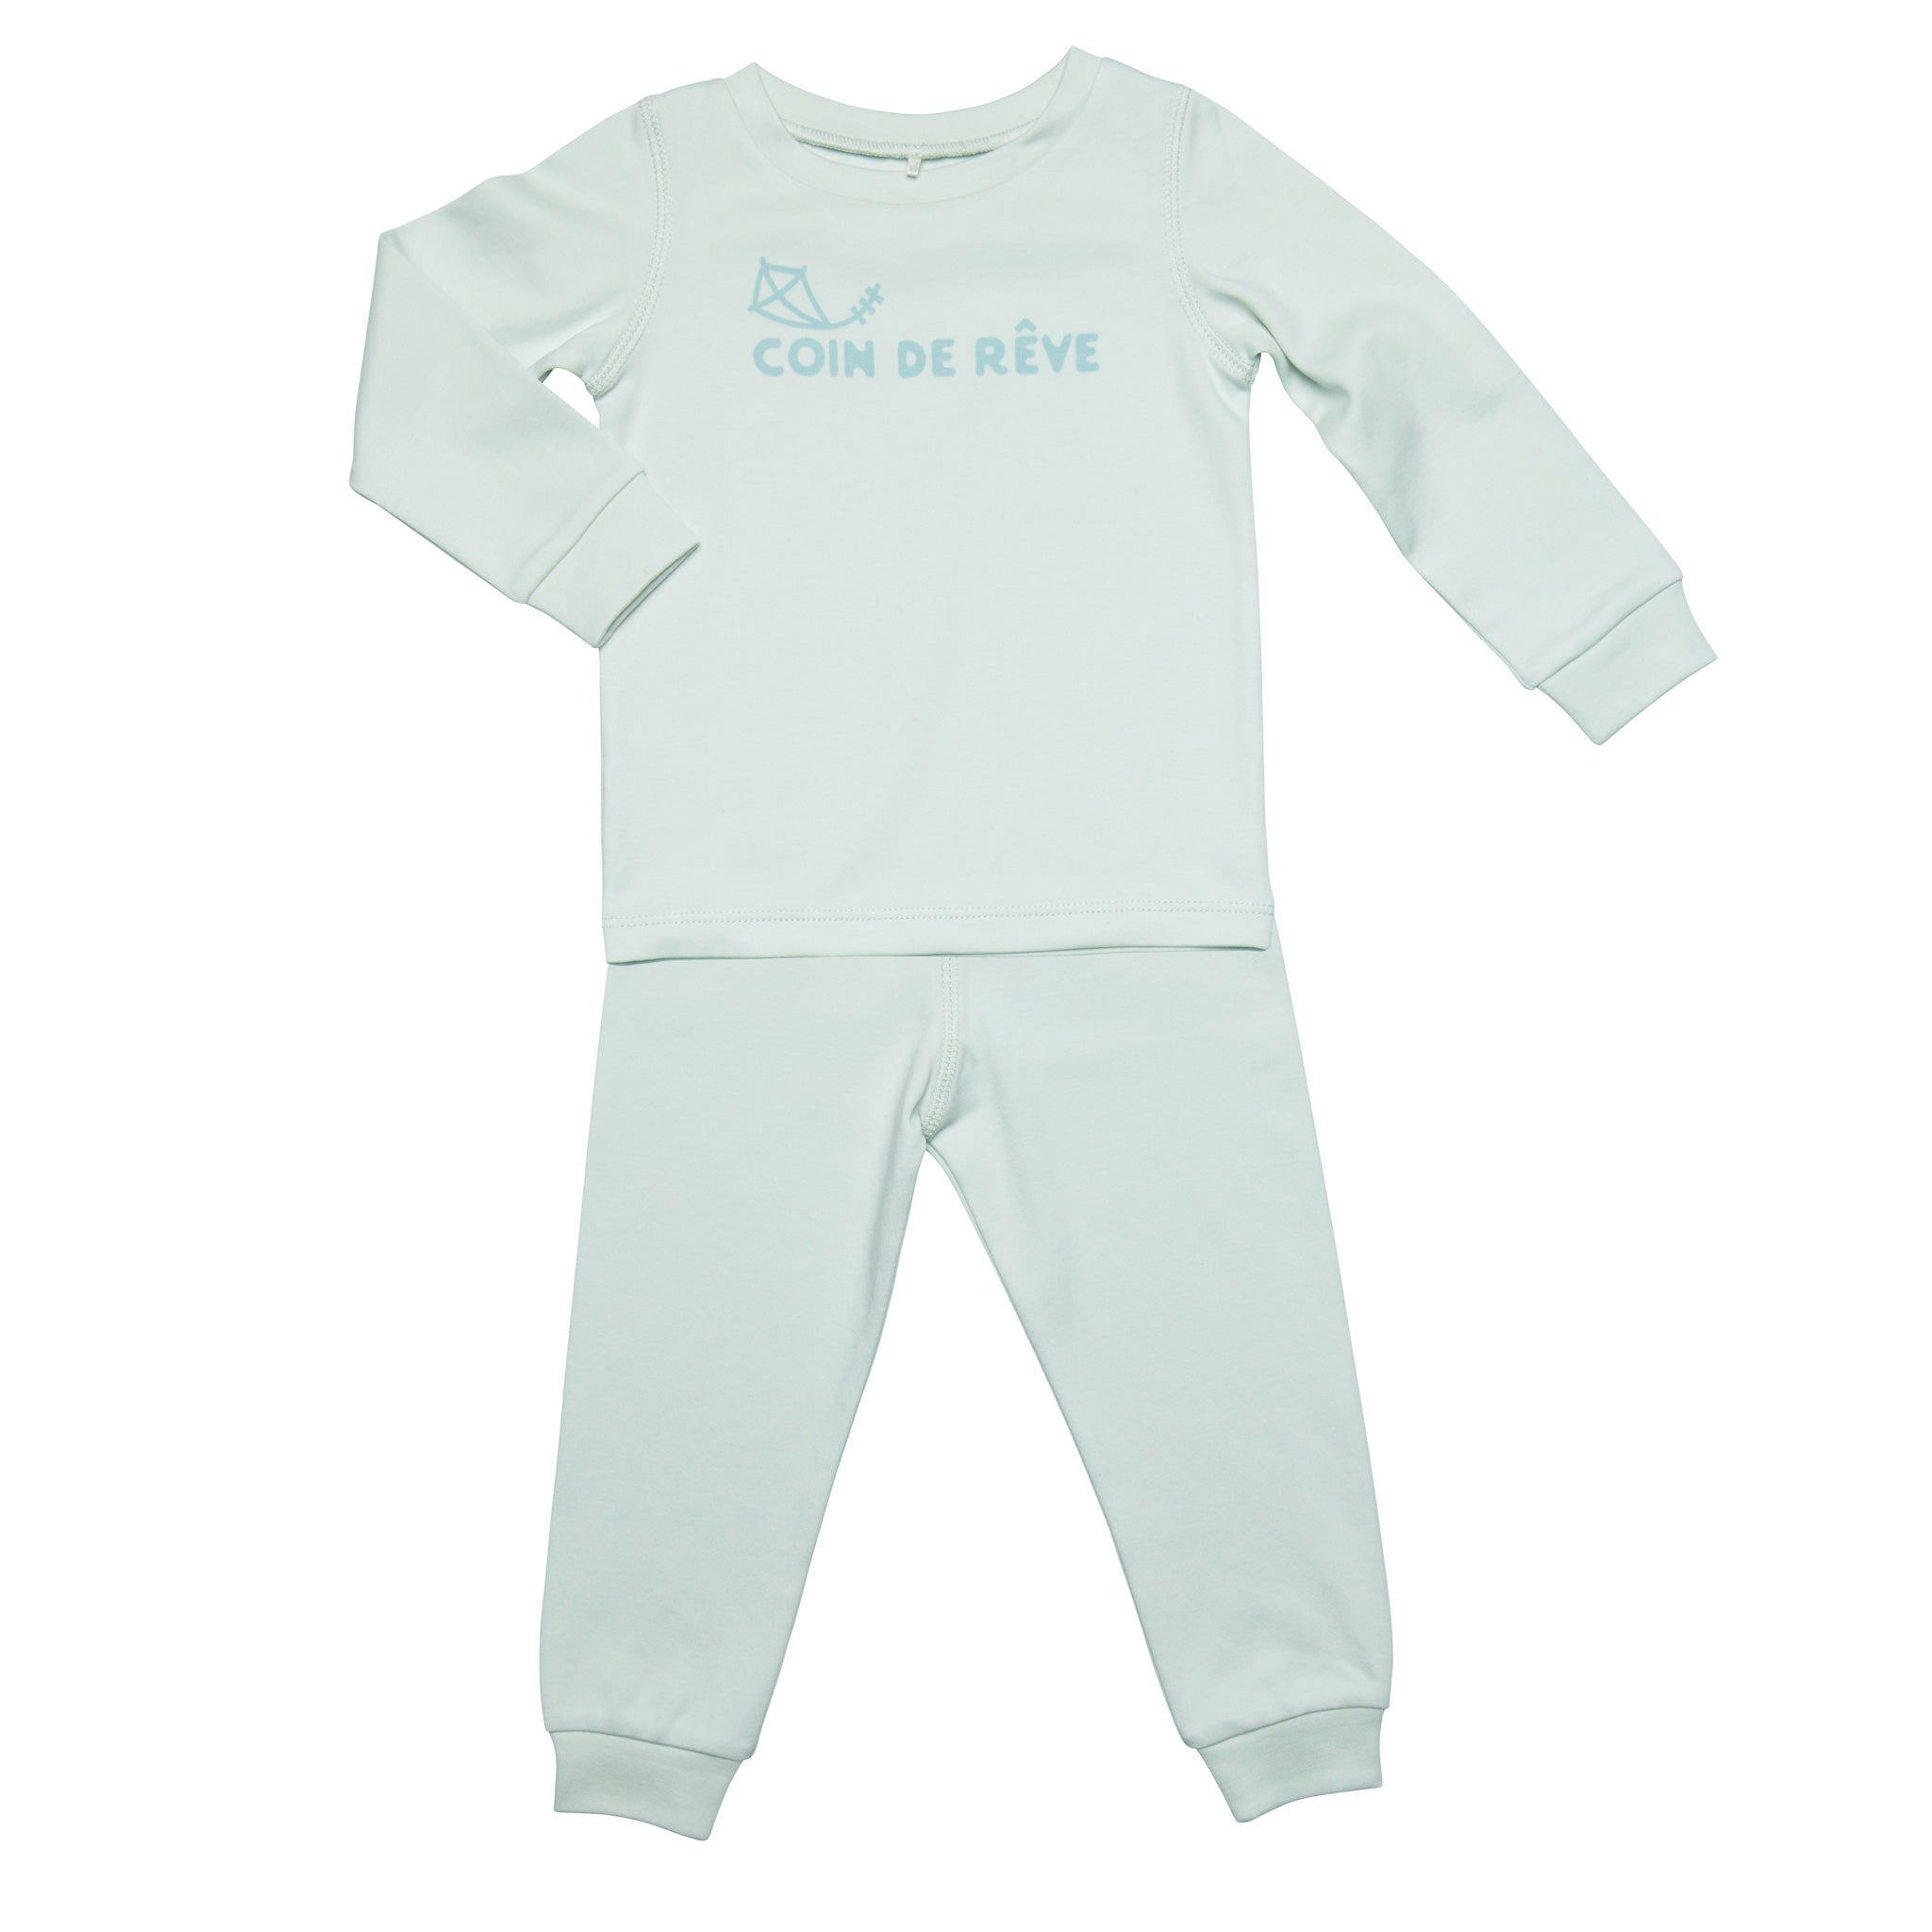 Milt mintfärgad tvådelad pyjamas i ekologisk bomull som ger bebisar den bästa nattsömnen